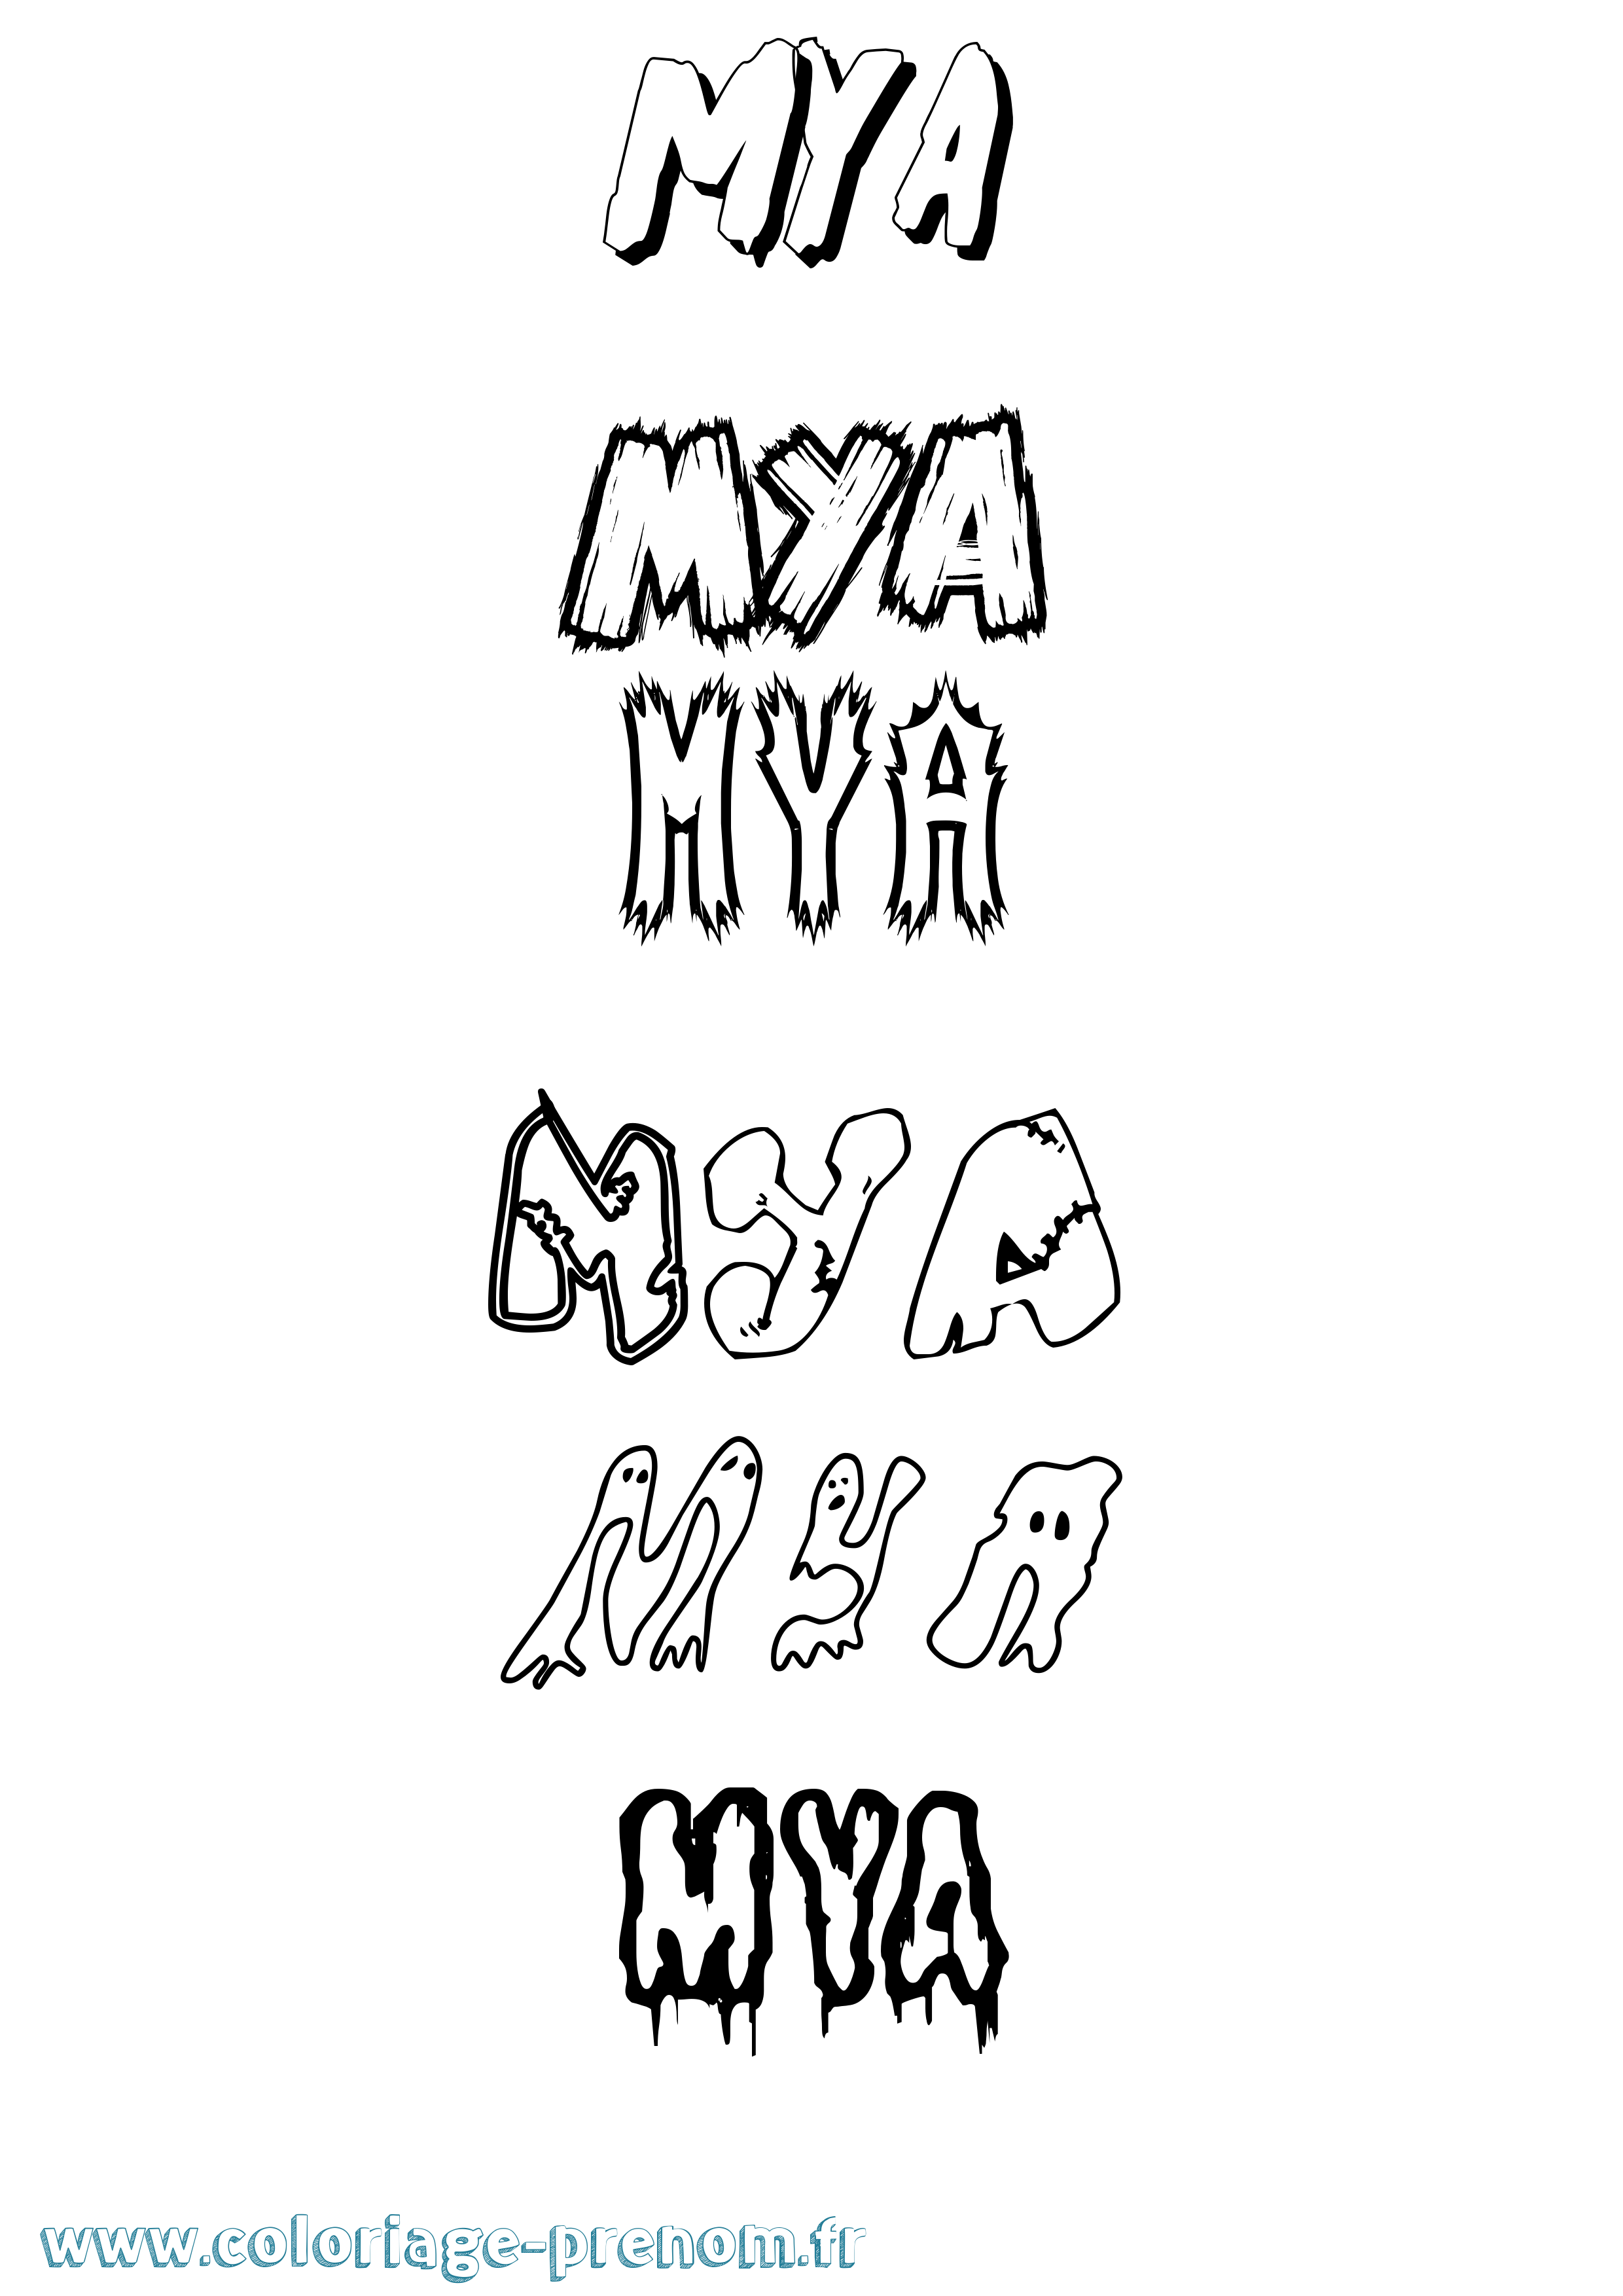 Coloriage prénom Mya